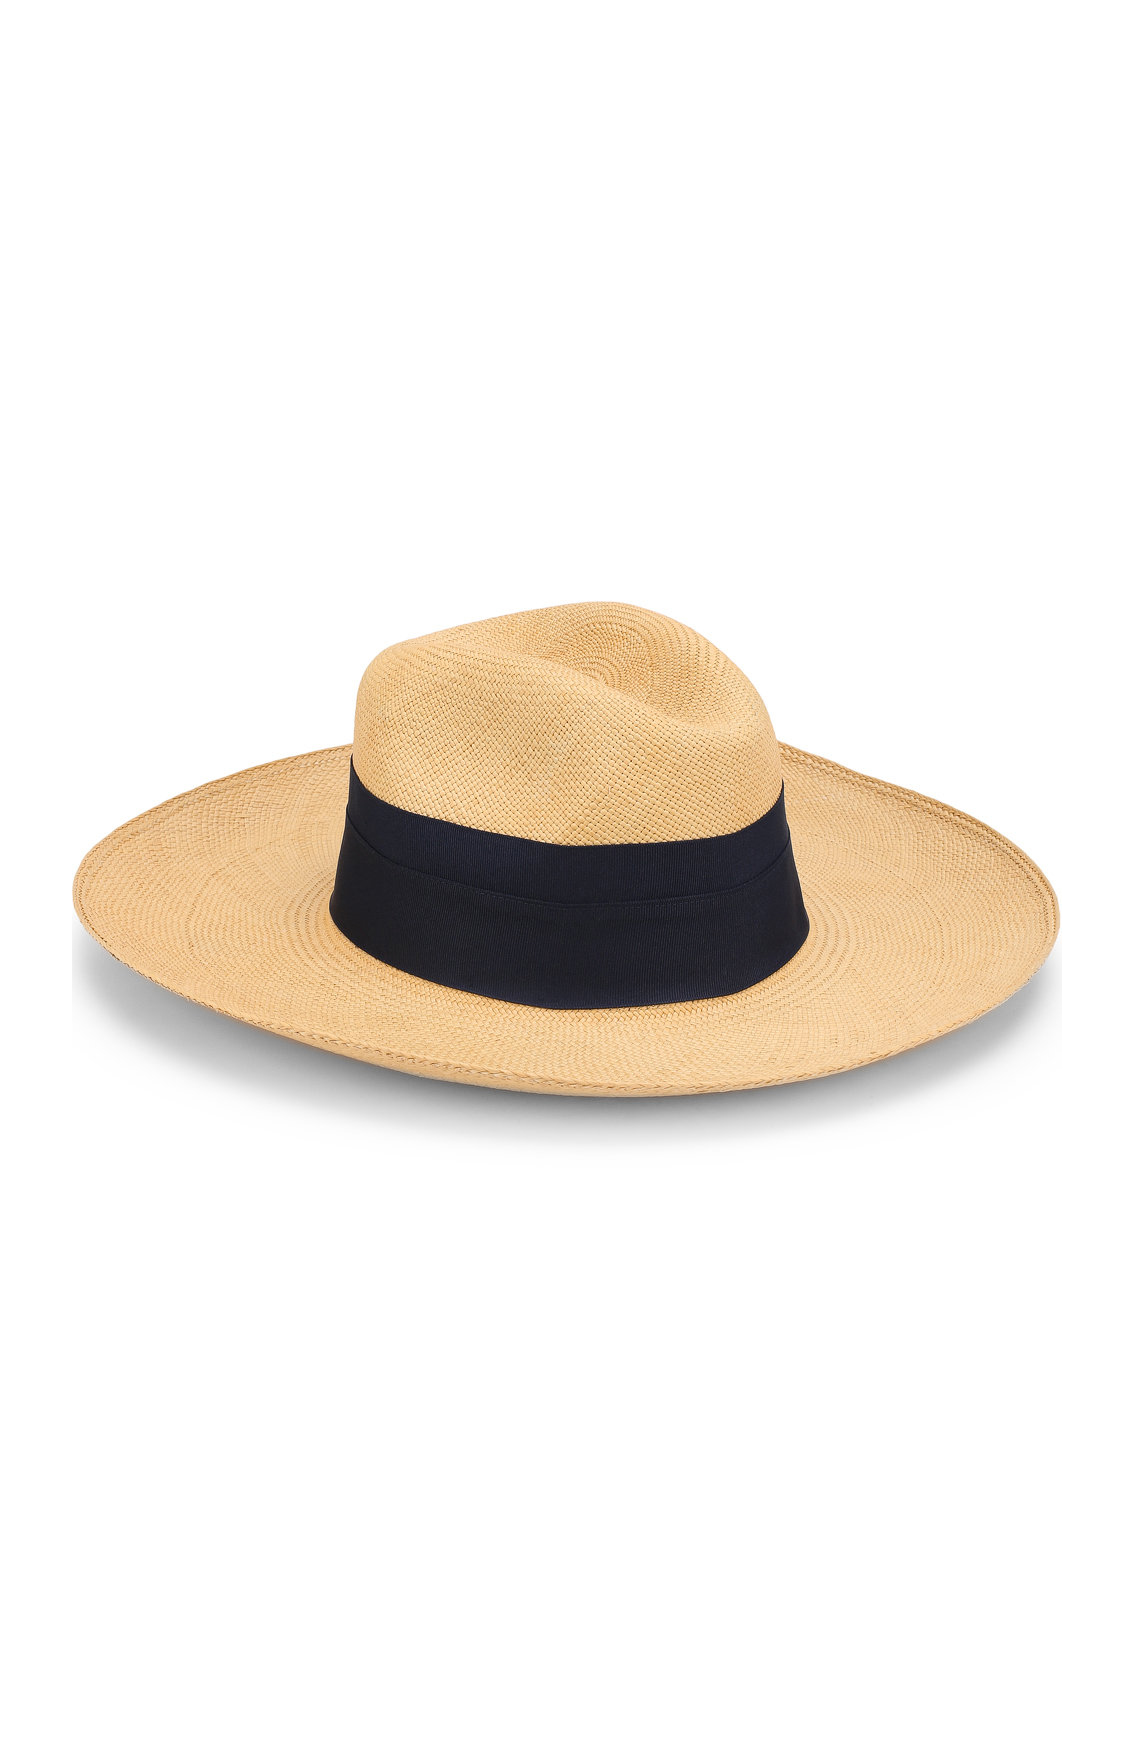 ARTESANO
Соломенная шляпа с лентой
